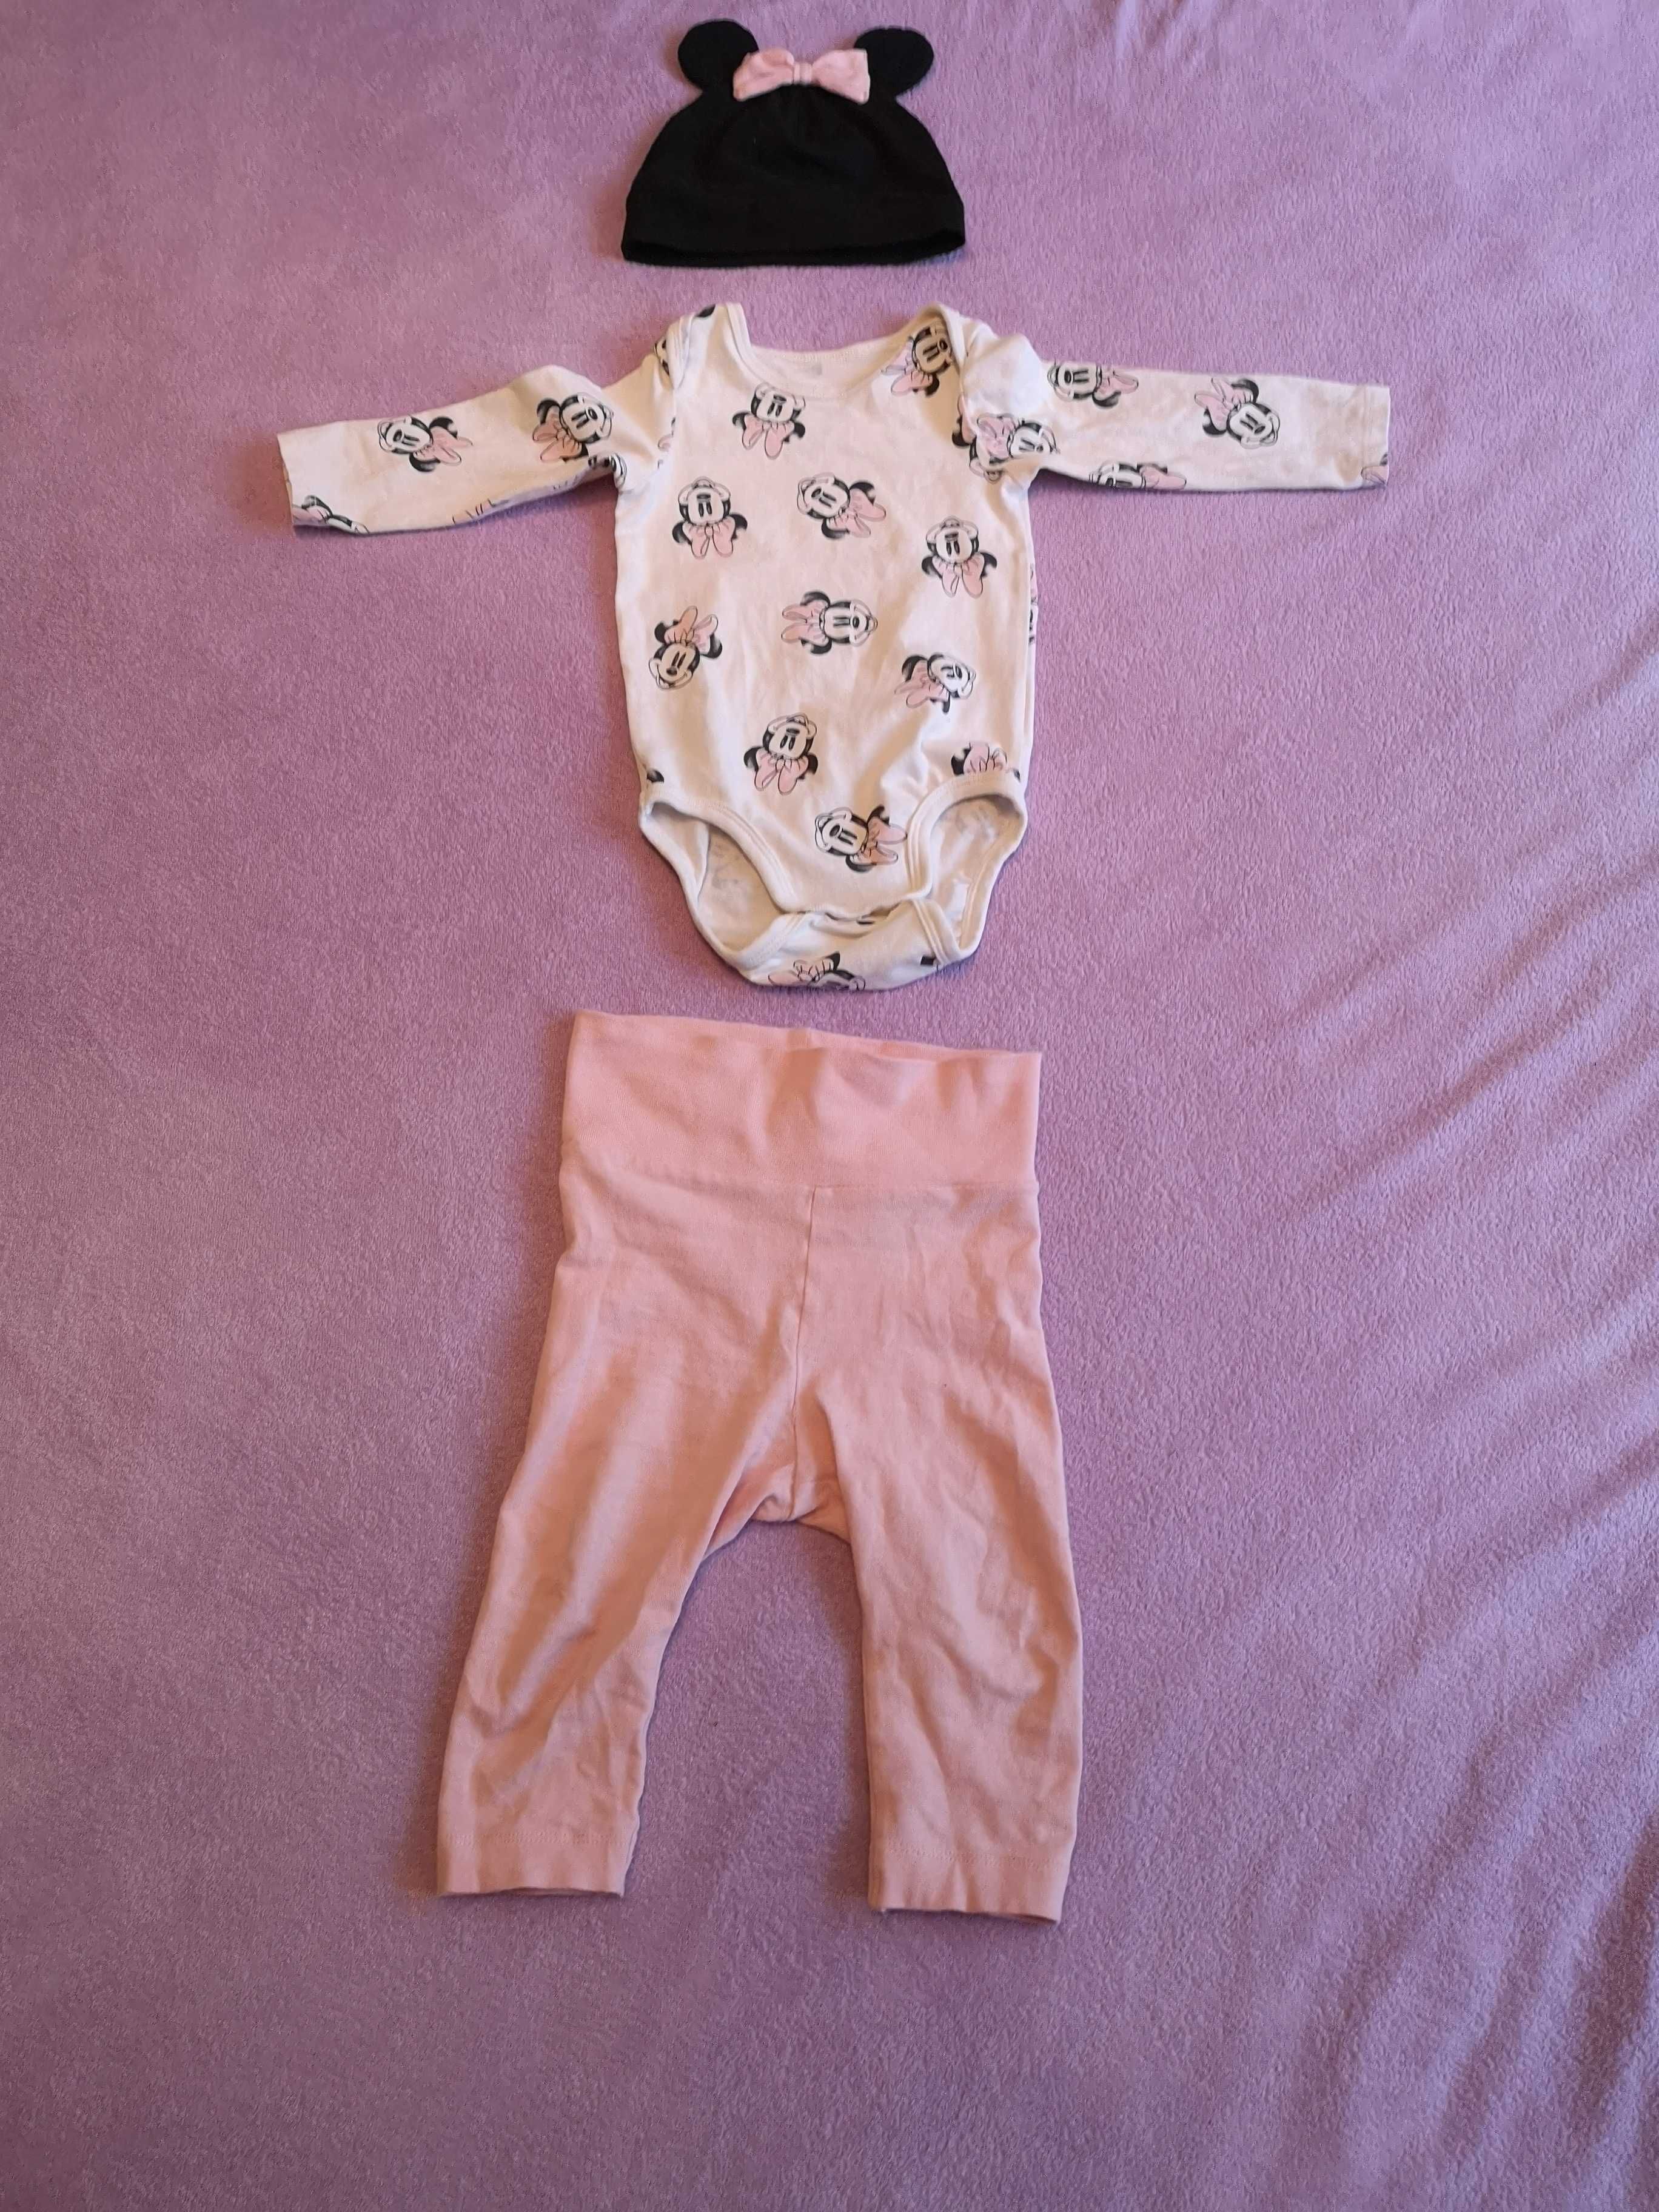 MEGA ZESTAW markowe ubranka niemowlęce rozmiar 74